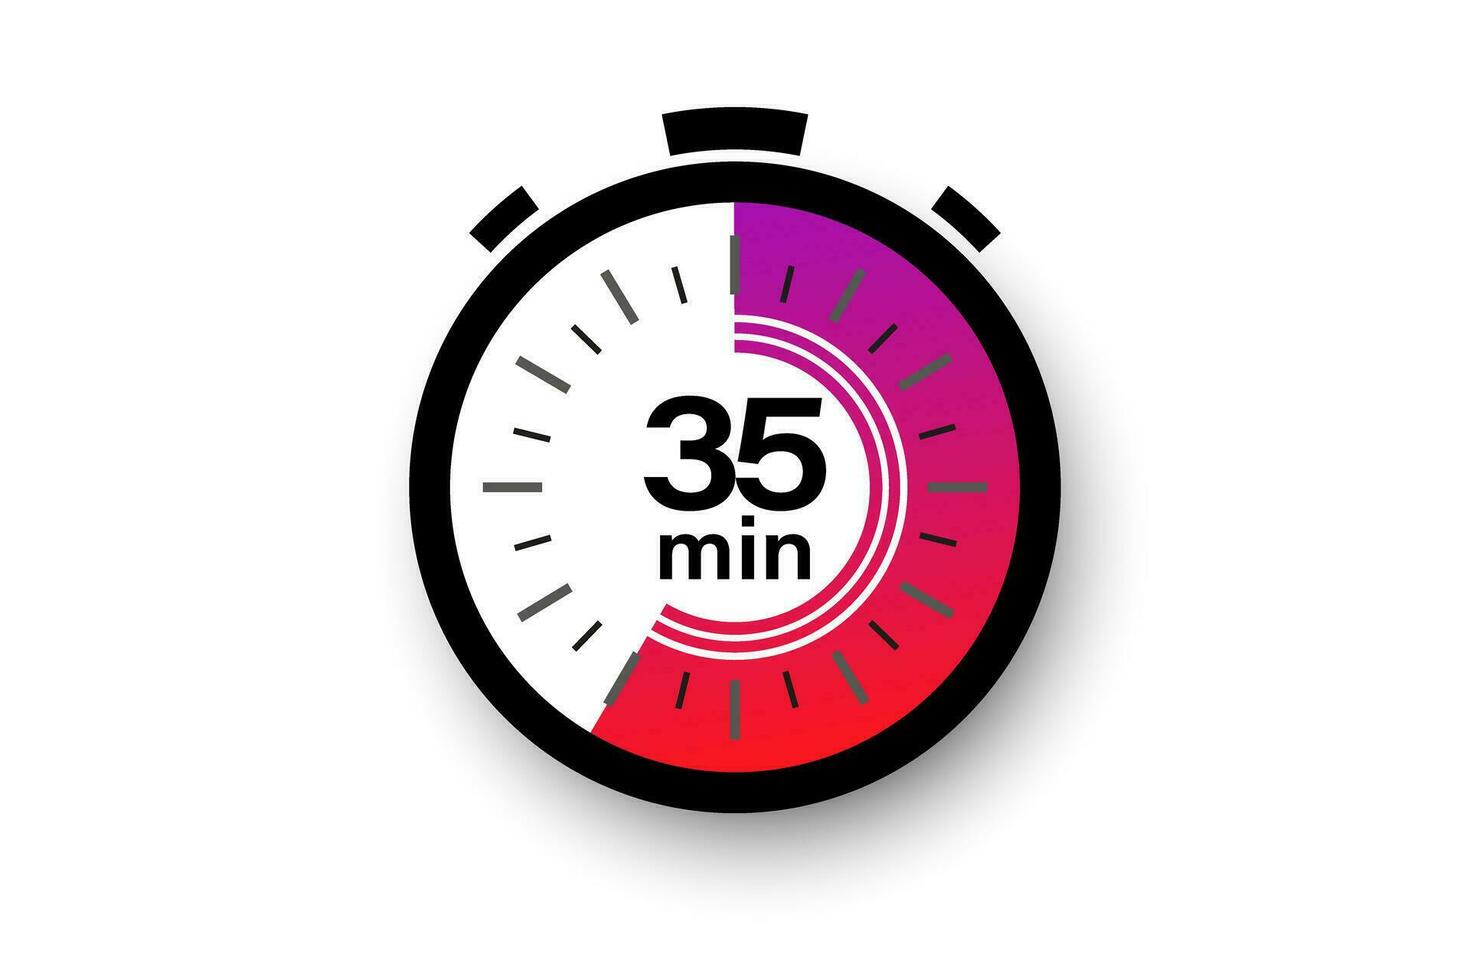 35 minuti Timer. cronometro simbolo nel piatto stile. modificabile isolato vettore illustrazione.